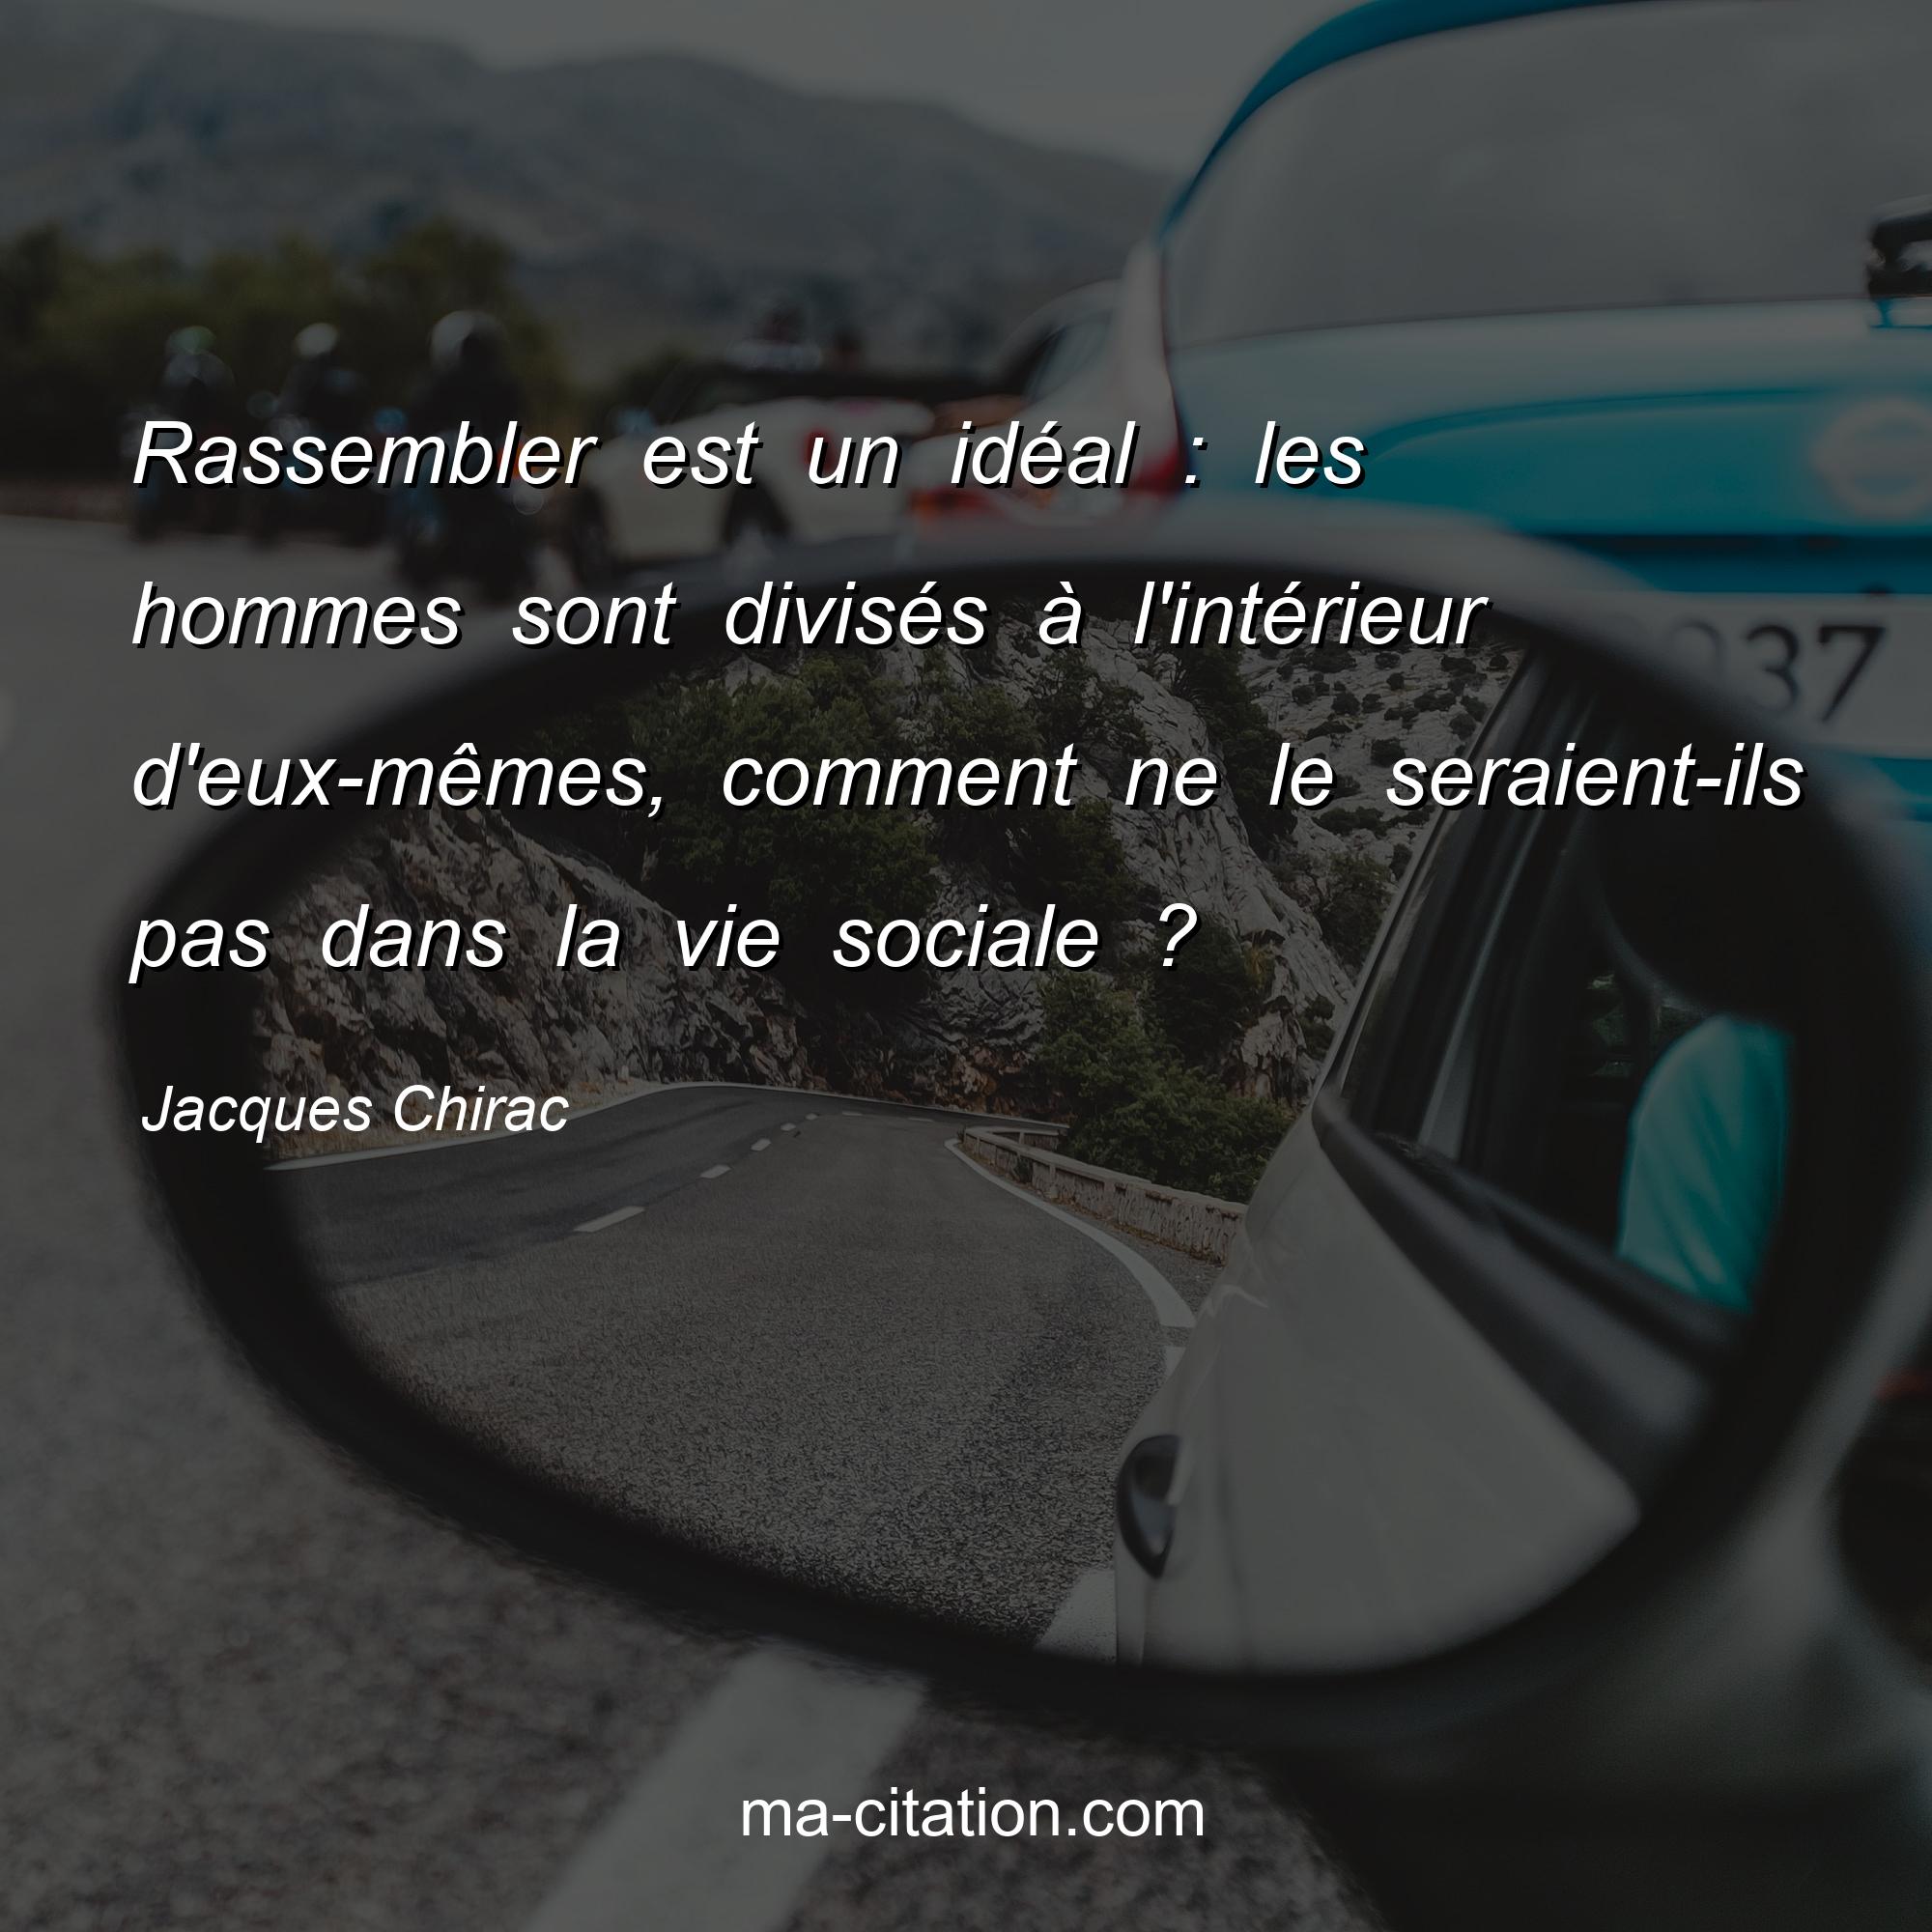 Jacques Chirac : Rassembler est un idéal : les hommes sont divisés à l'intérieur d'eux-mêmes, comment ne le seraient-ils pas dans la vie sociale ?